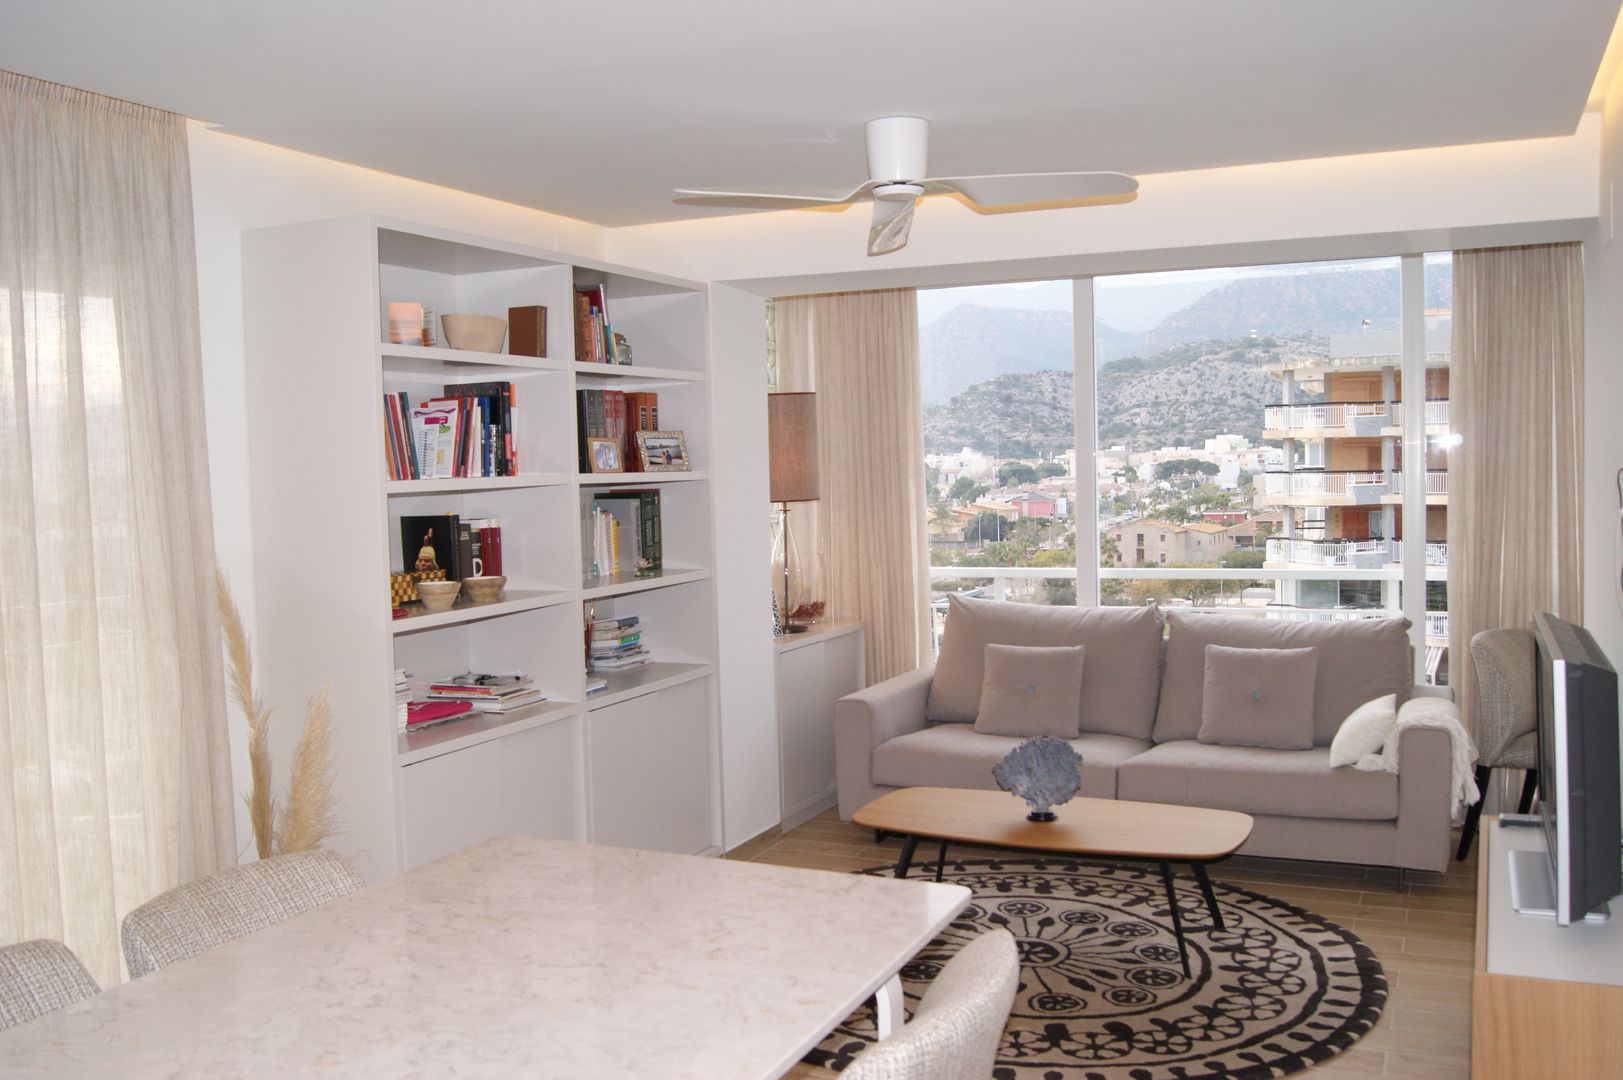 INTERIORISMO: Reforma completa de un apartamento en Benicasim, Sara Hueso Fibla Sara Hueso Fibla غرفة المعيشة أبلكاش